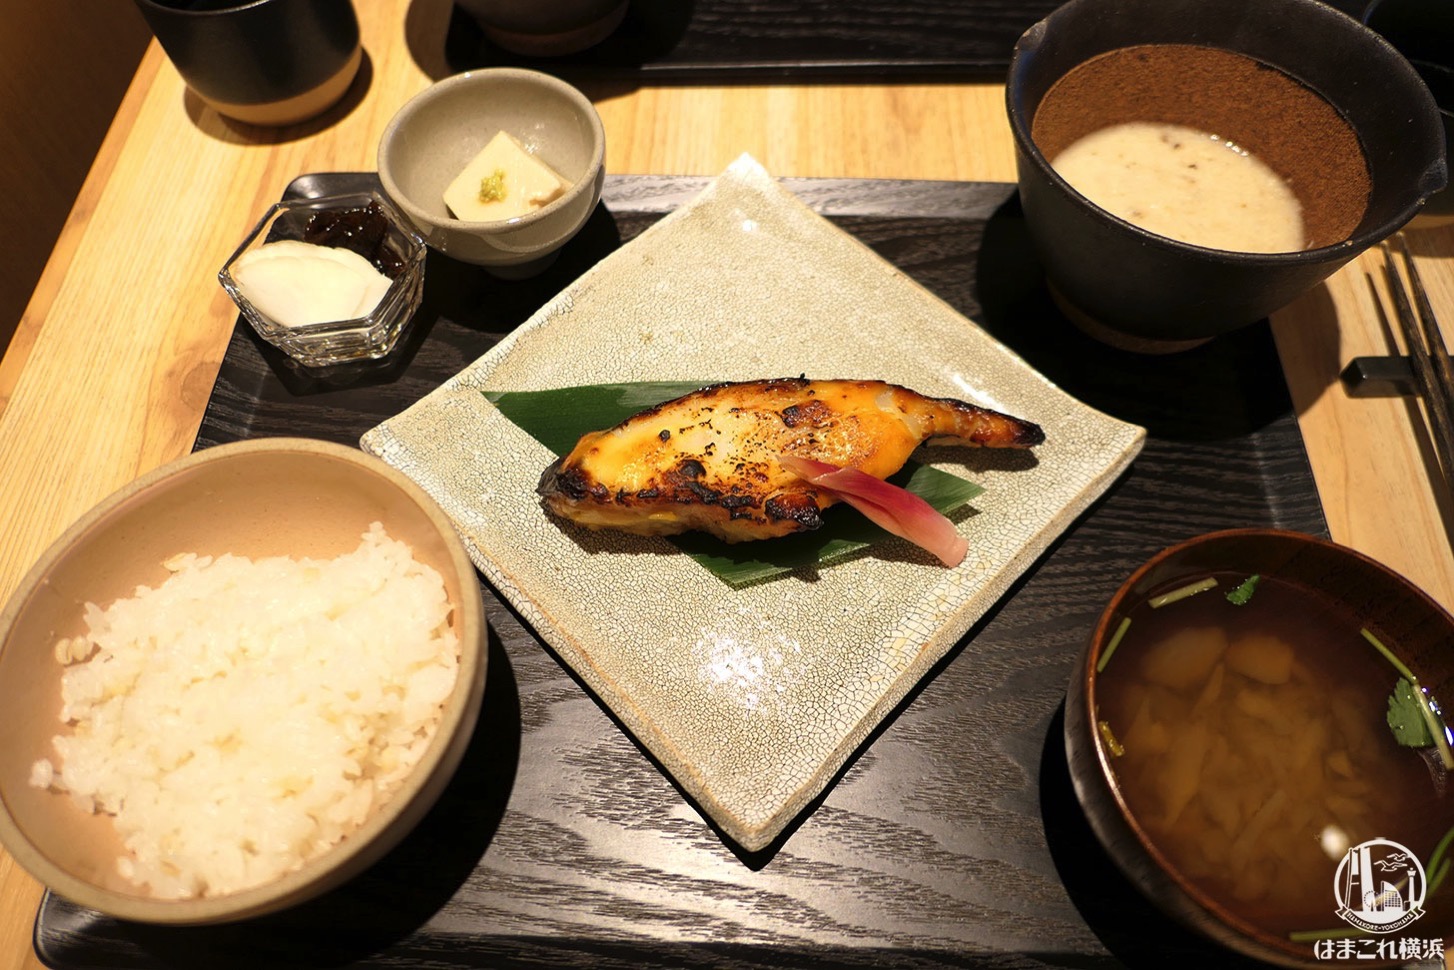 黒十 横浜のランチは自然薯とろろ食べ放題でめちゃ旨！めすすめの駅近・和食店